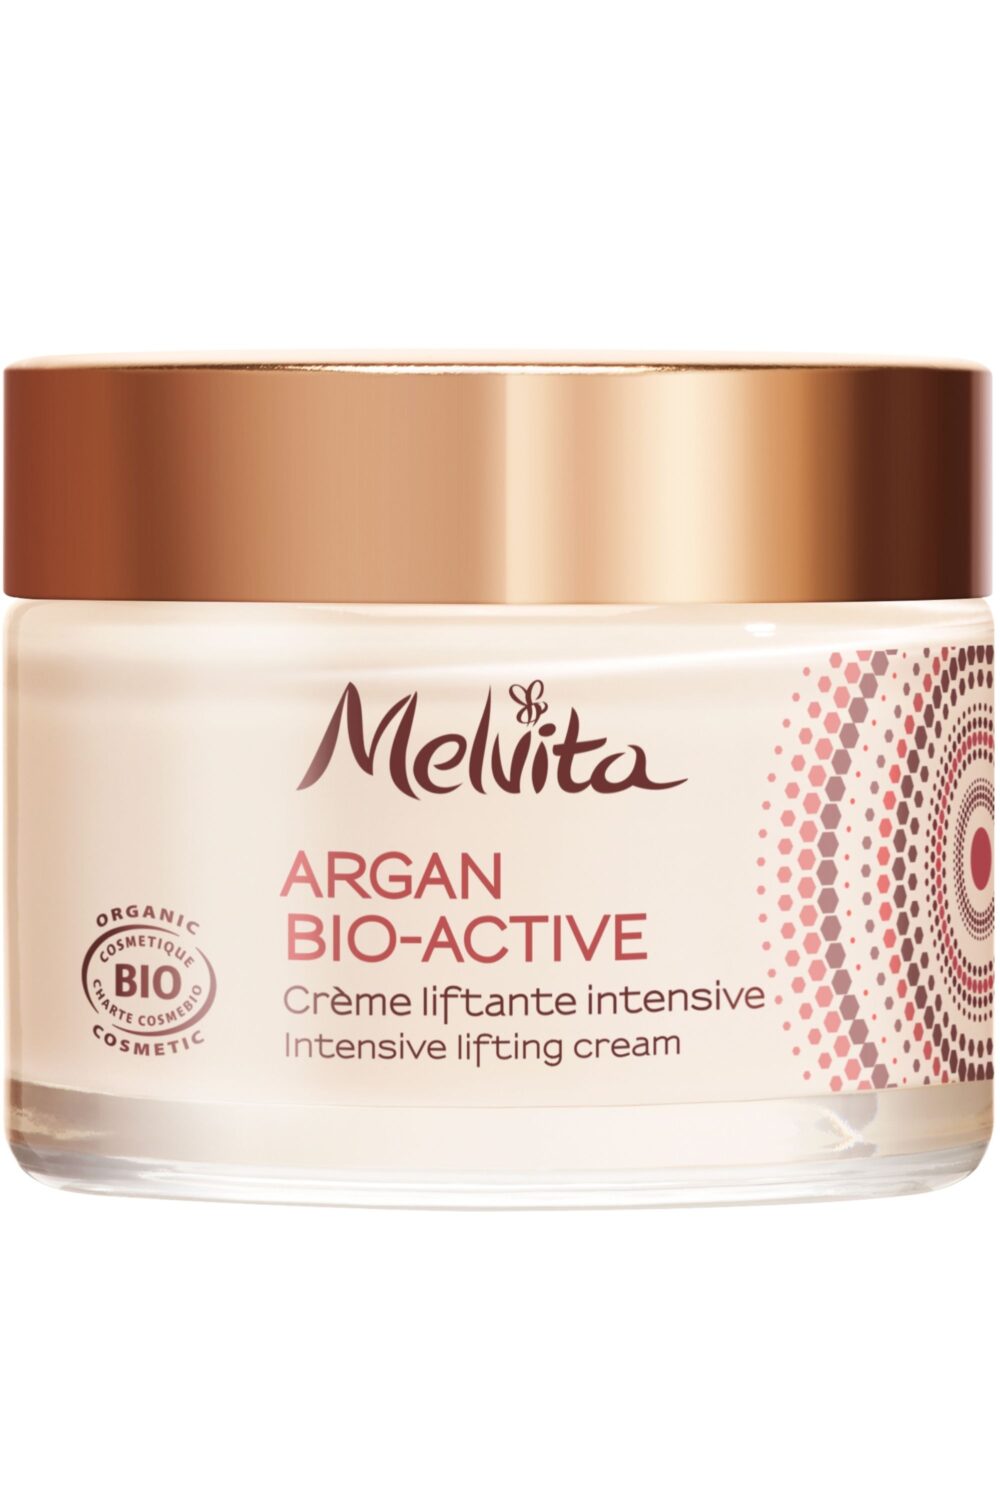 Melvita - Crème visage argan bio-active